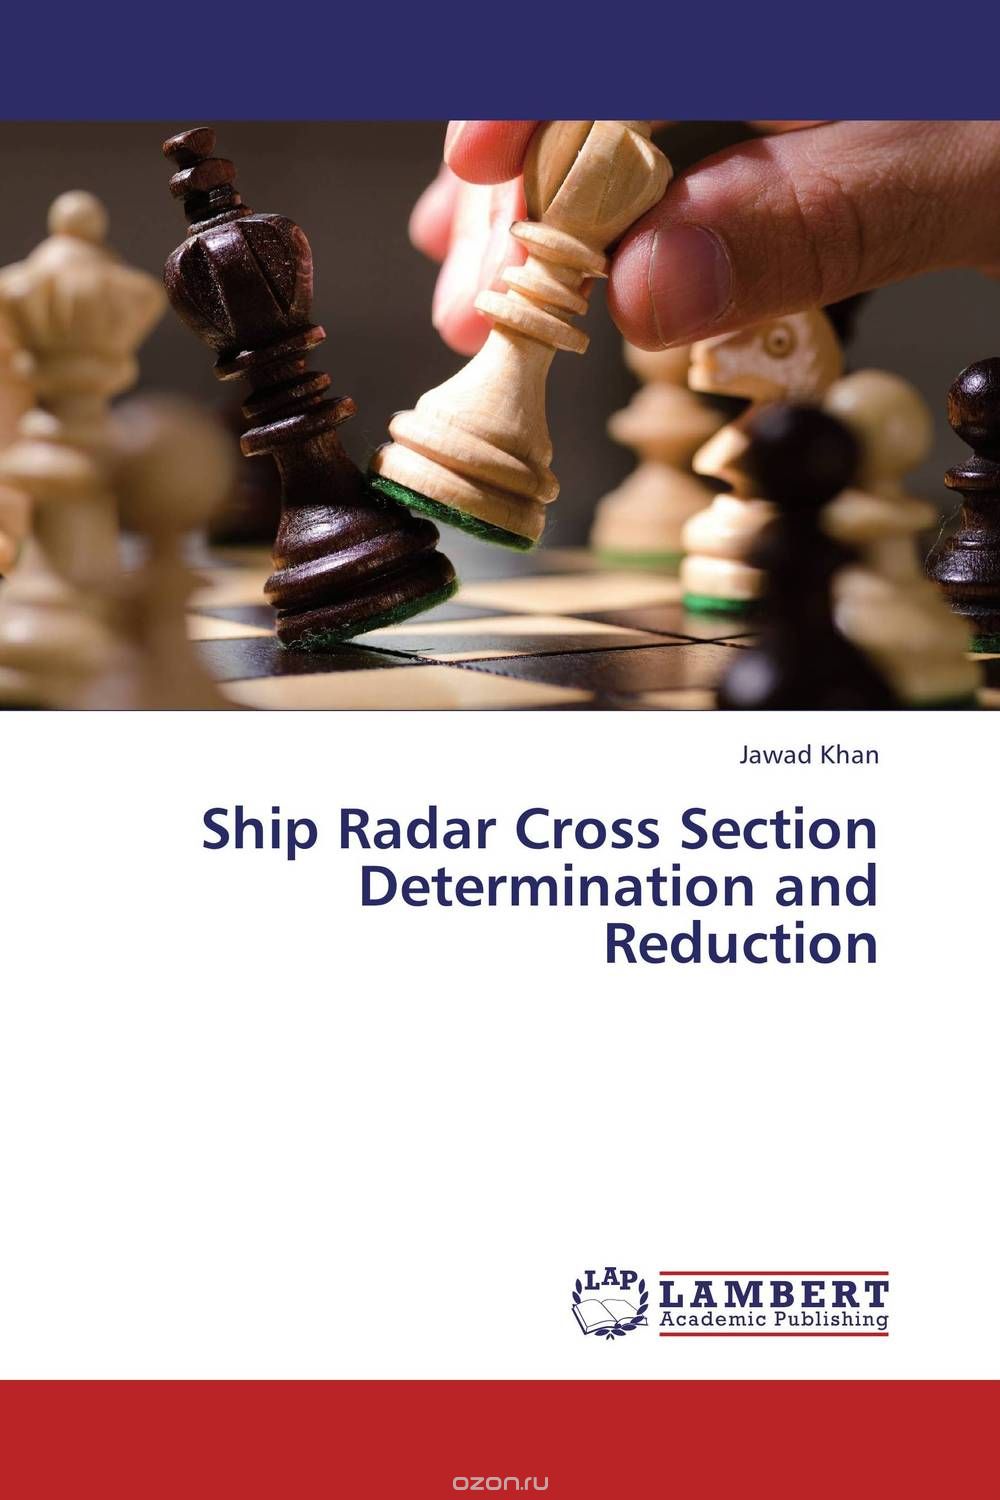 Скачать книгу "Ship Radar Cross Section Determination and Reduction"